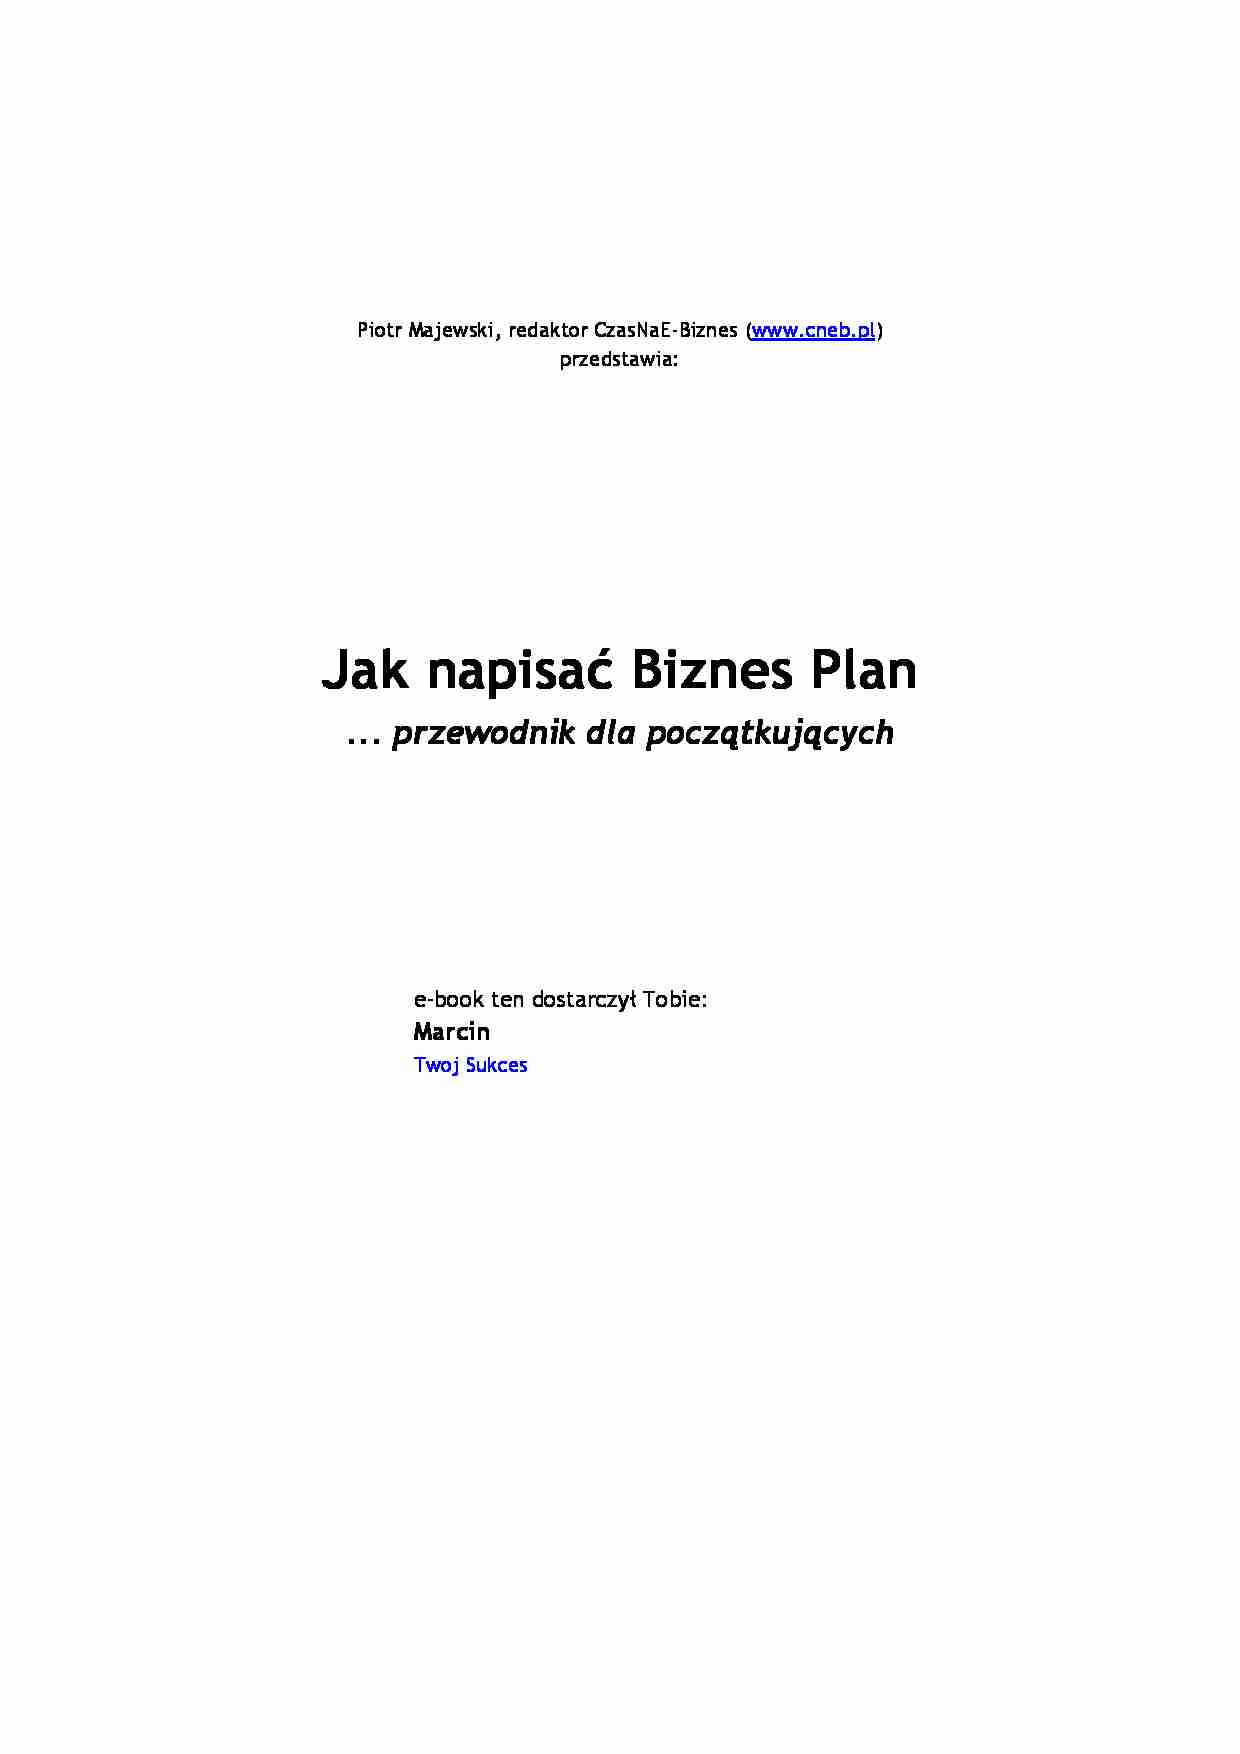 Jak napisać biznes plan - strona 1